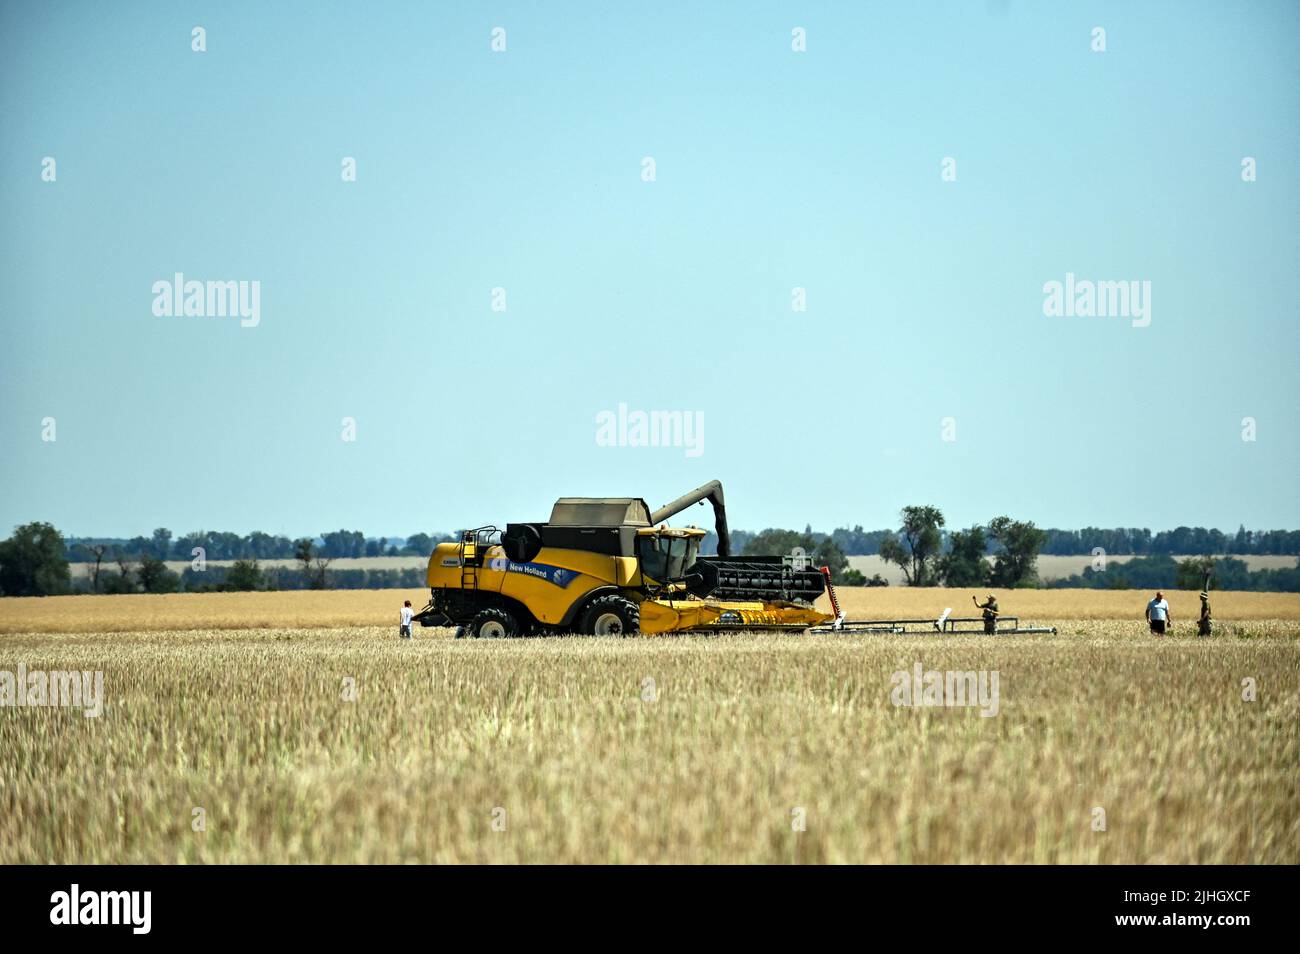 Zaporizhzhia Region, Ukraine - 17. Juli 2022 - Ein Mähdrescher dedumps Weizen auf dem Feld, Saporizhzhia Region, Südosten der Ukraine. Dieses Foto kann nicht in der Russischen Föderation verteilt werden. Foto von Dmytro Smolyenko/Ukrinform/ABACAPRESS.COM Stockfoto